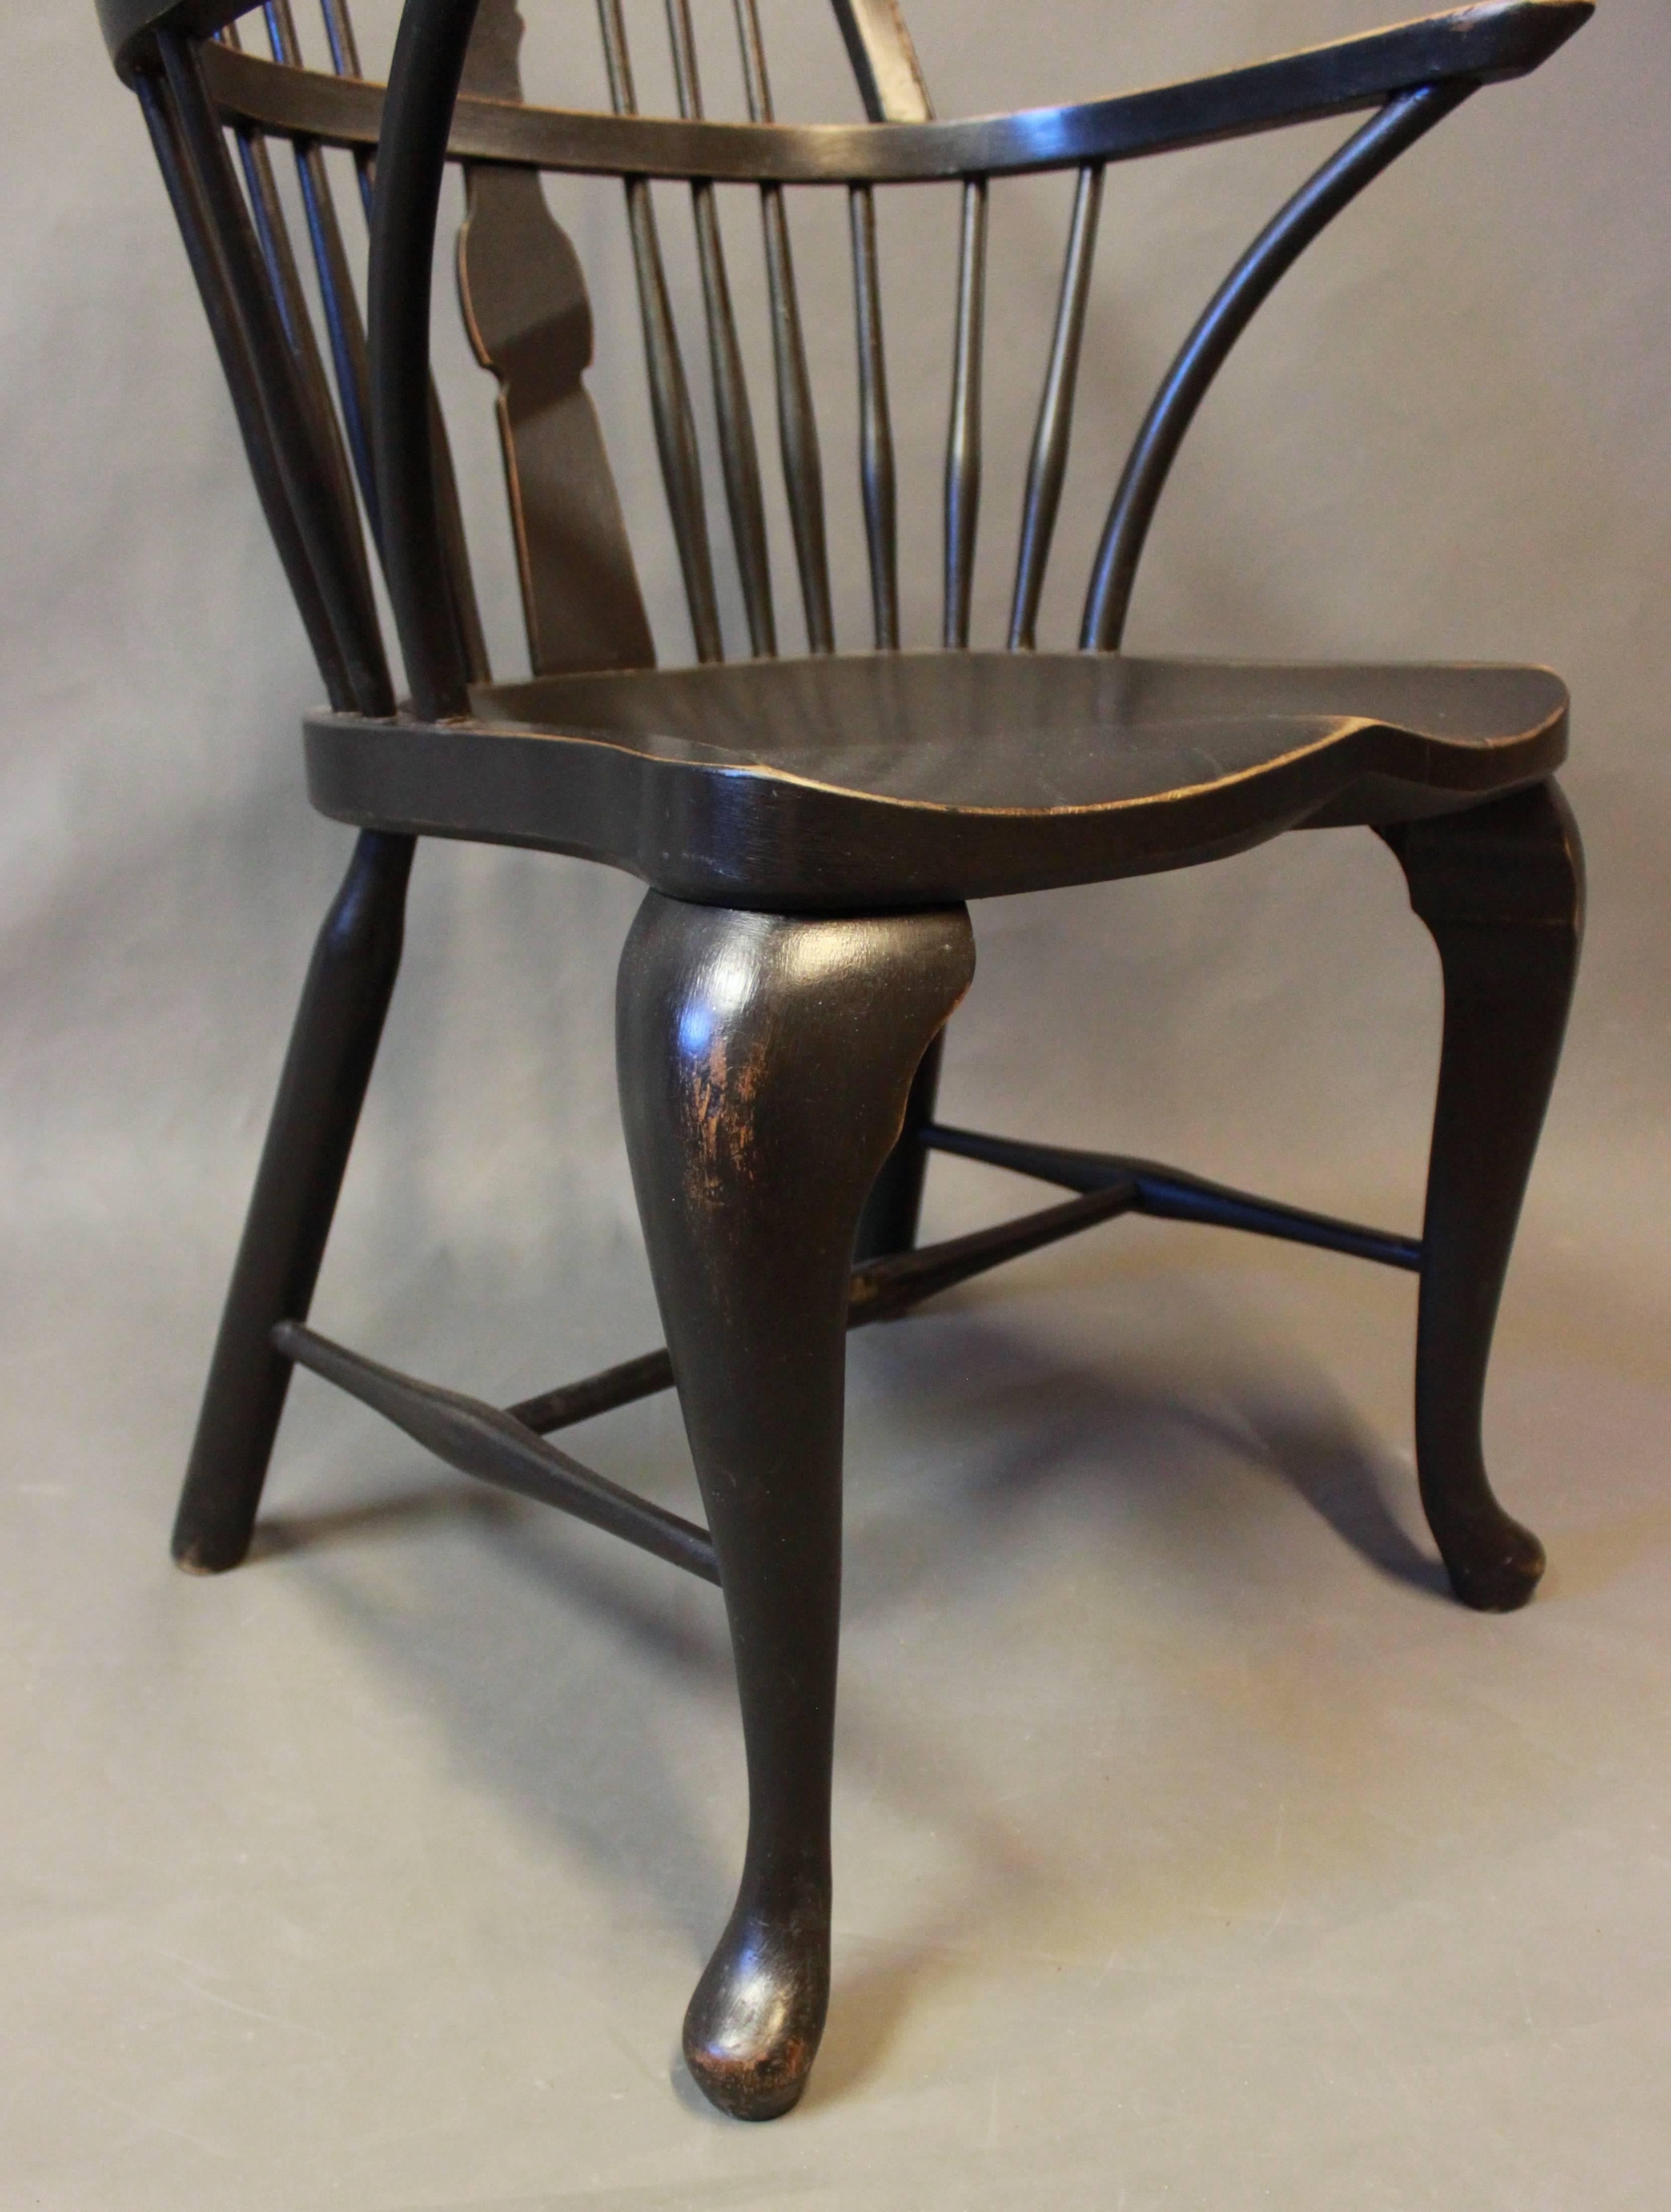 Fauteuil Windsor en bois peint en noir des années 1880. Les chaises sont en très bon état.